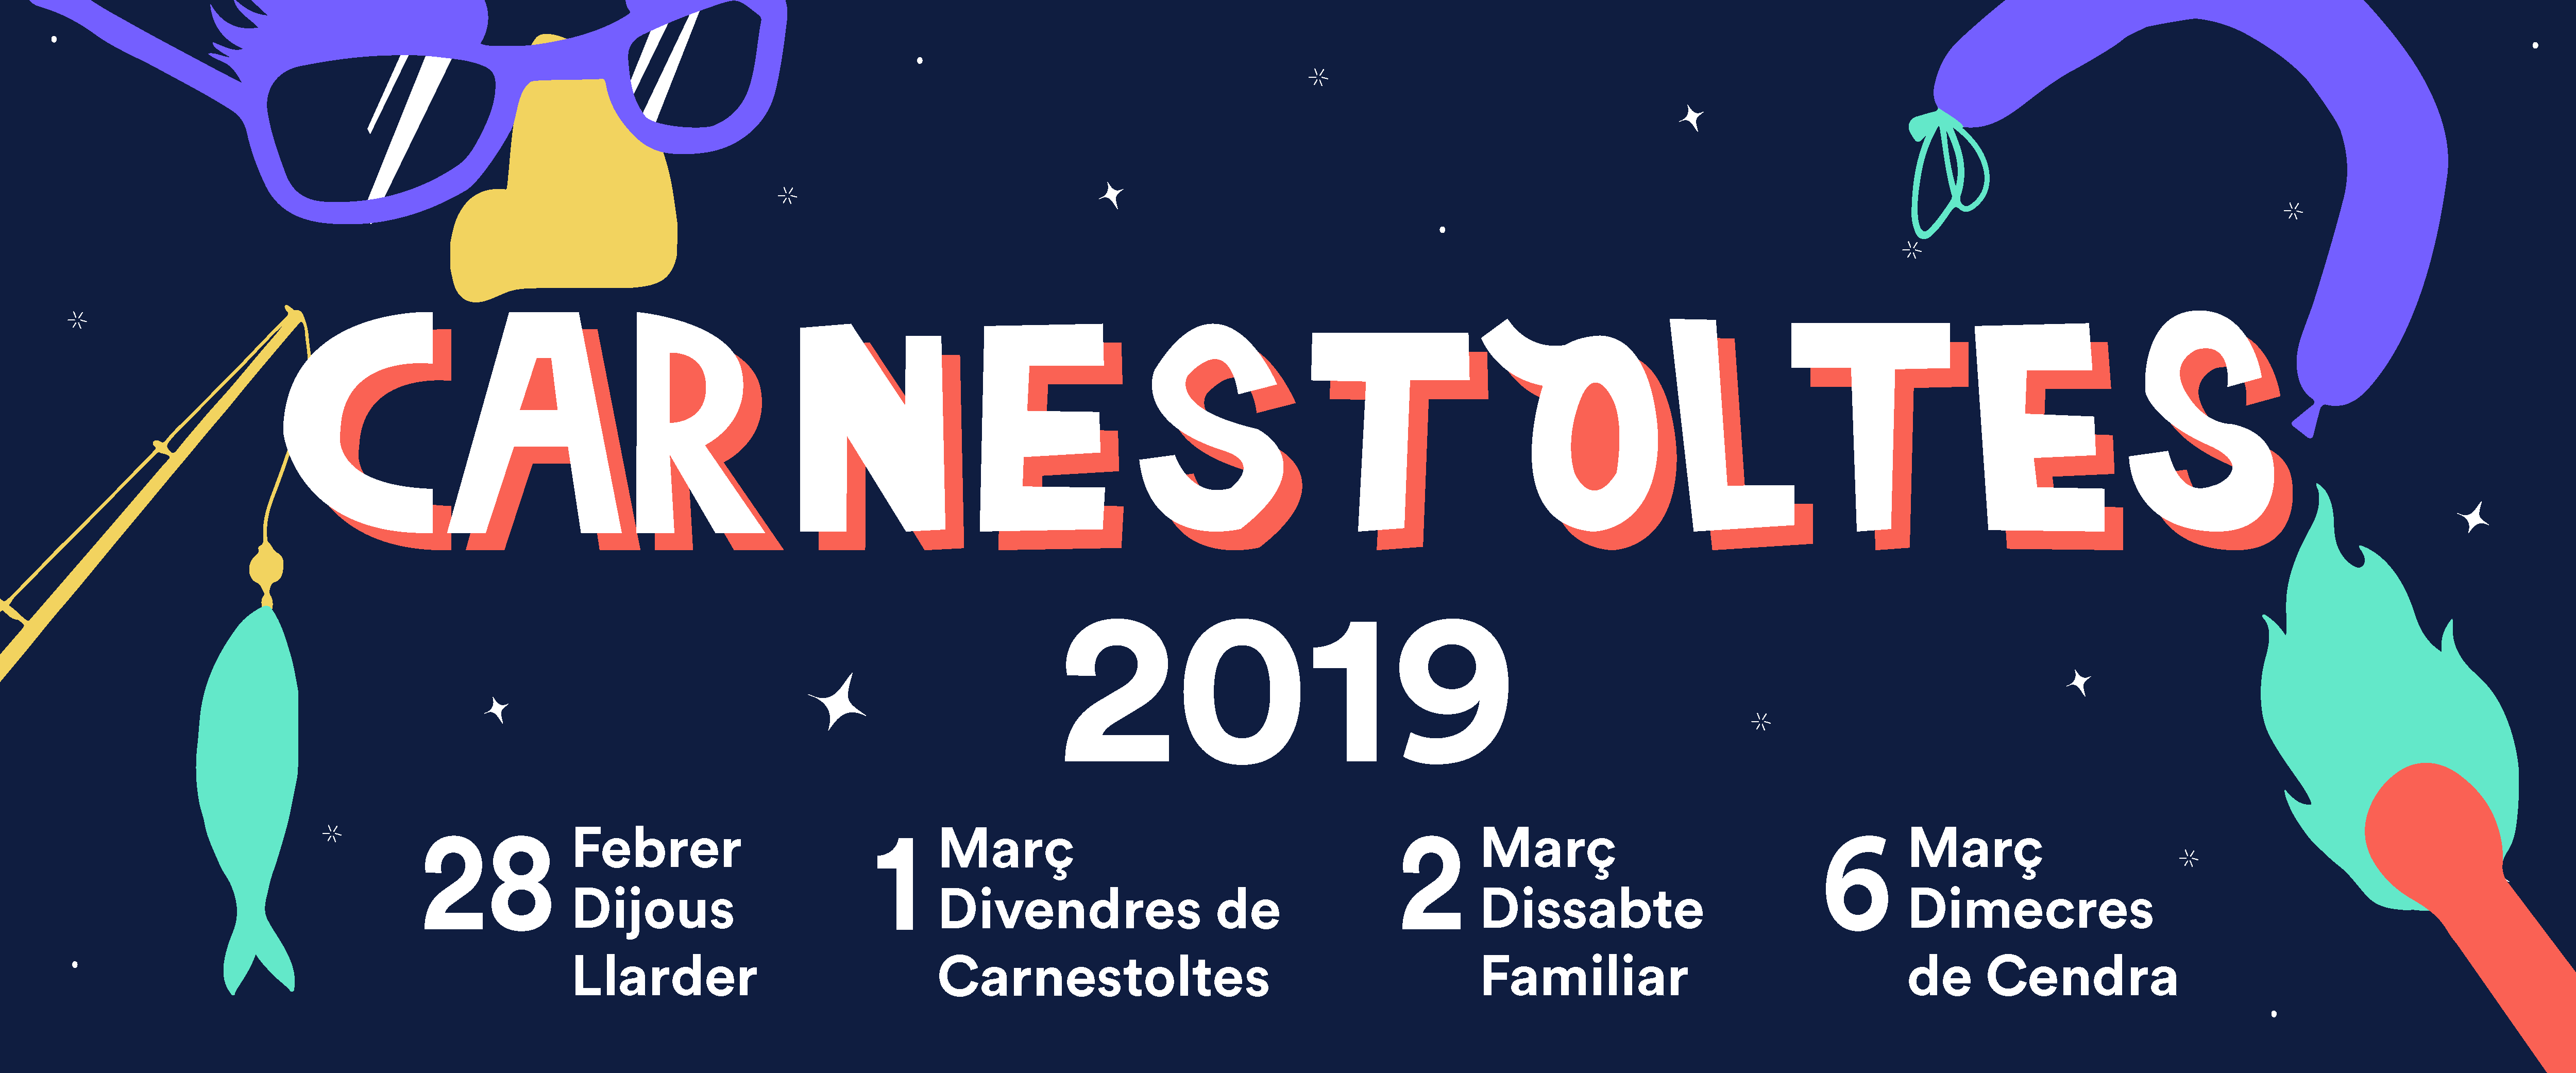 Carnestoltes 2019